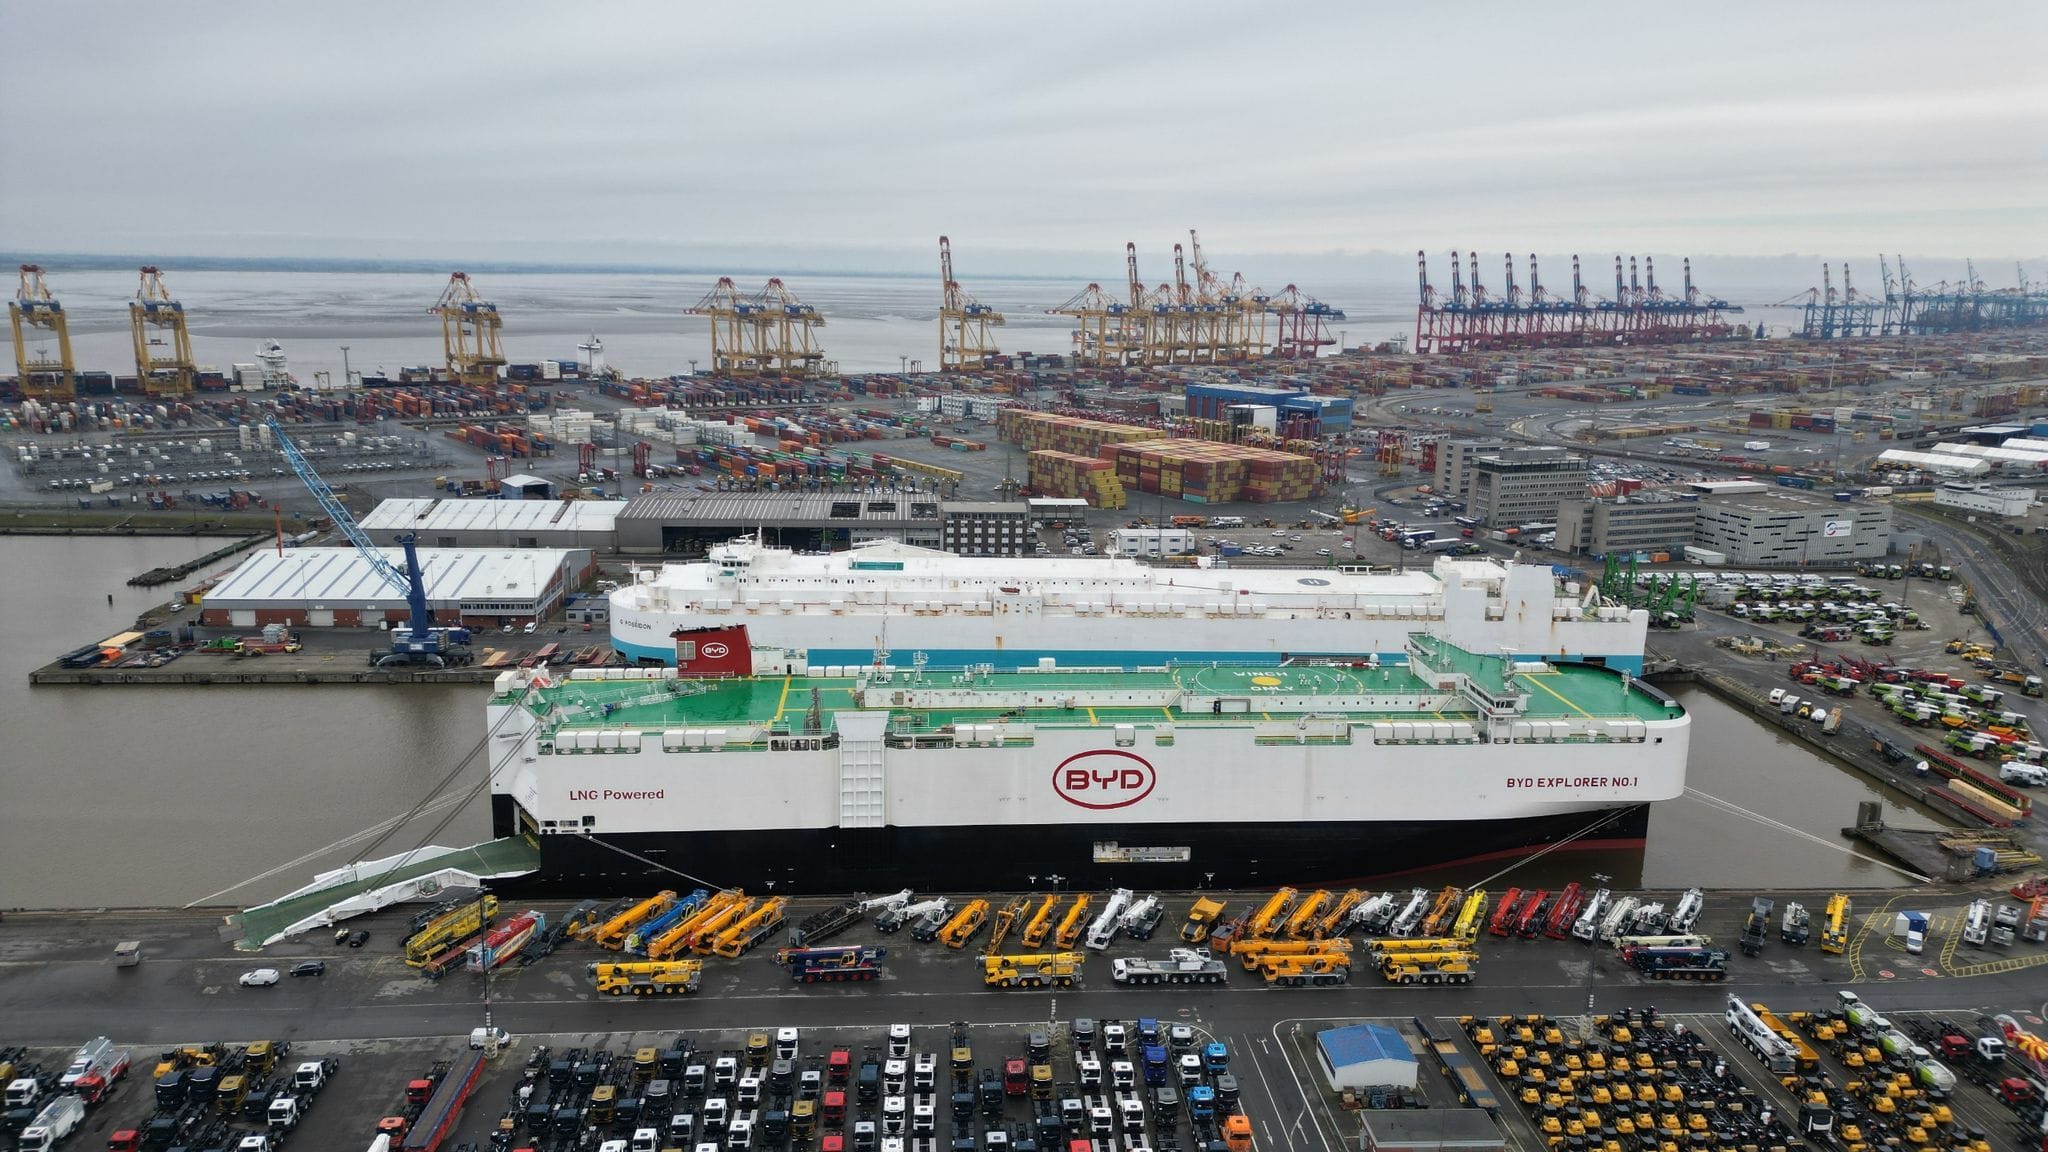 BYD: E-Autos aus China schimmeln auf Hafengelände in Bremerhaven